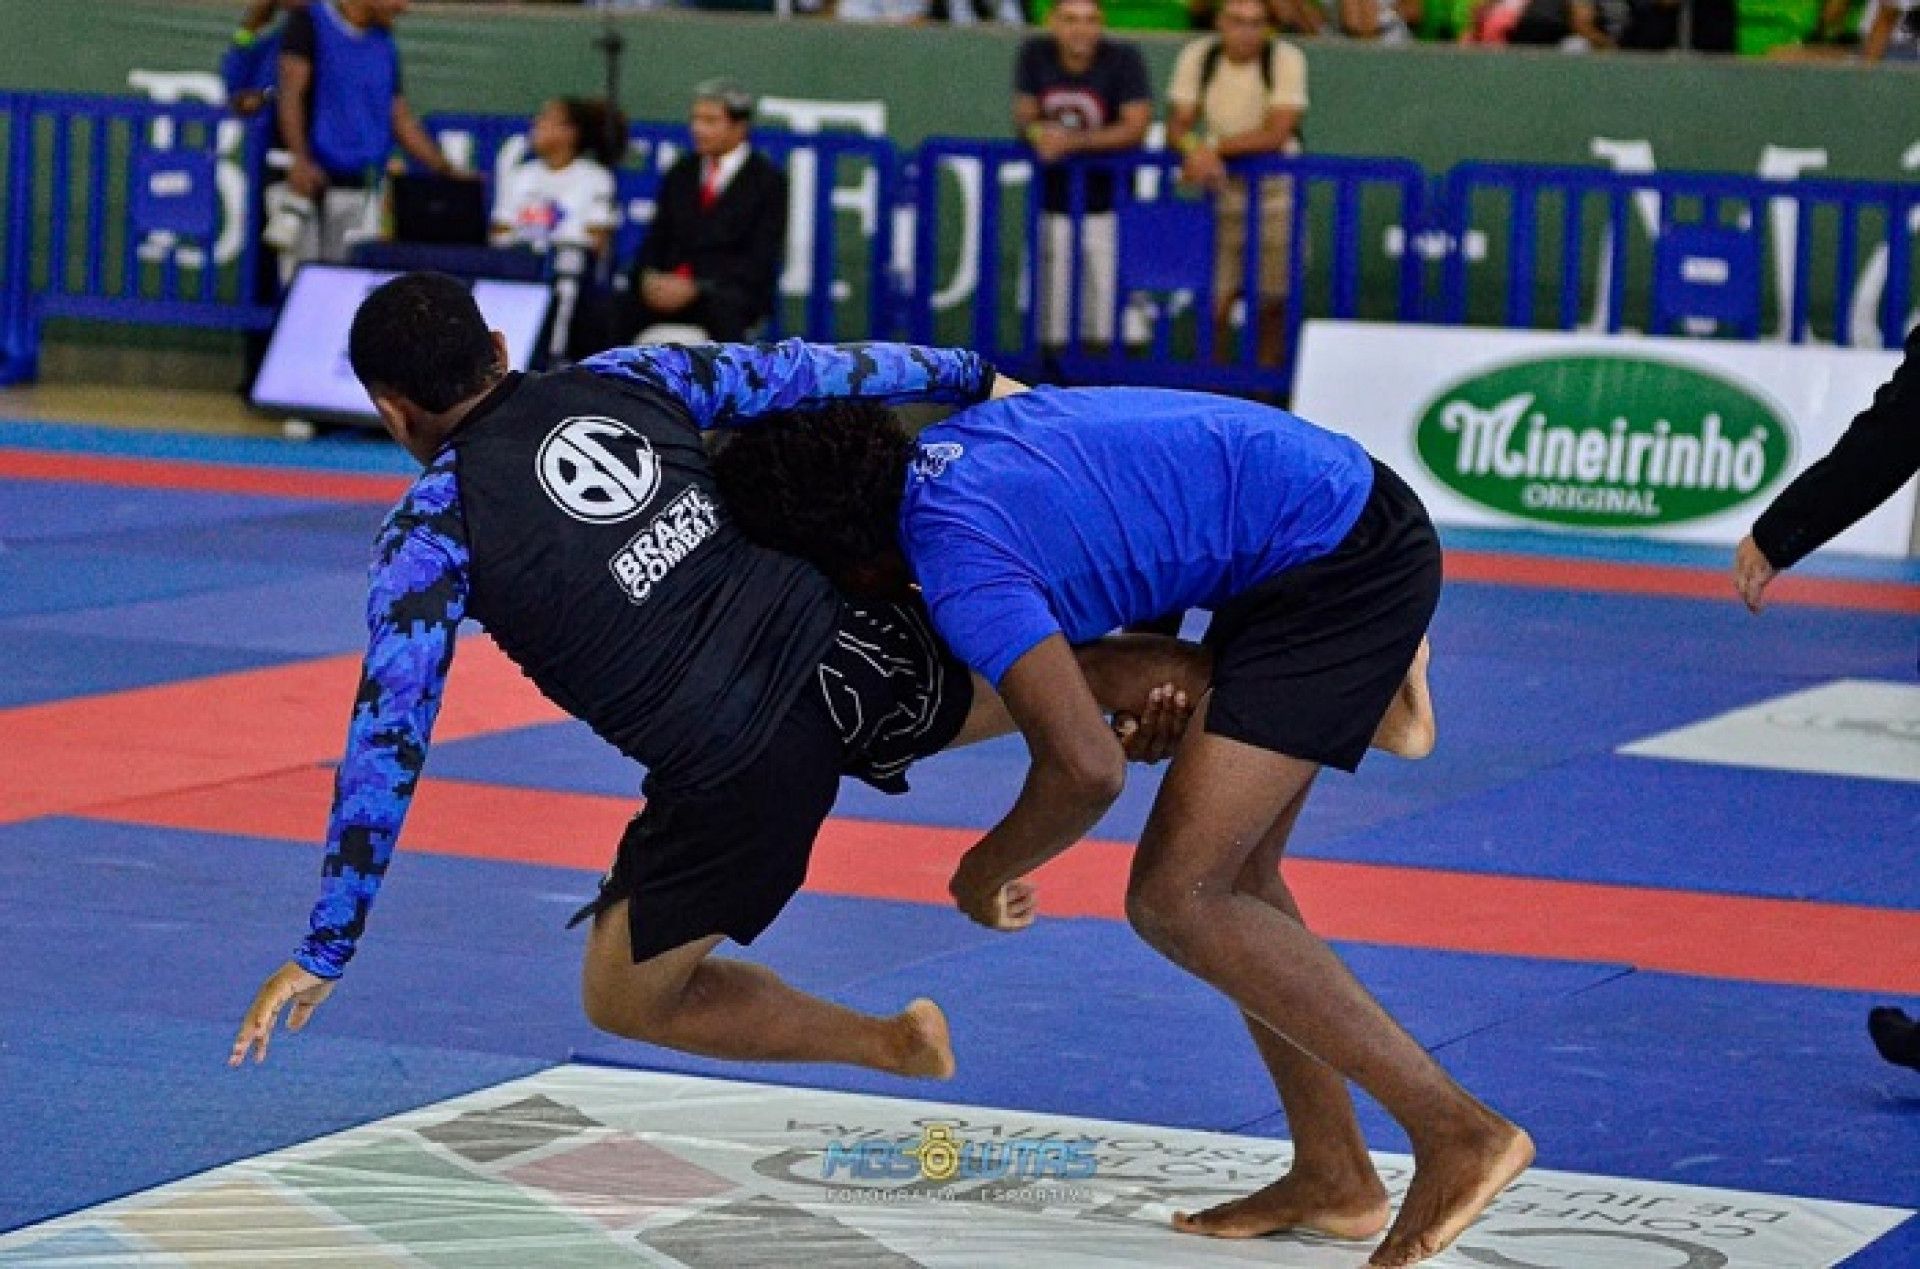 Disputas No-Gi foram uma atração à parte no Sul Americano de Jiu-Jitsu Desportivo  - (Foto: MBS Lutas)